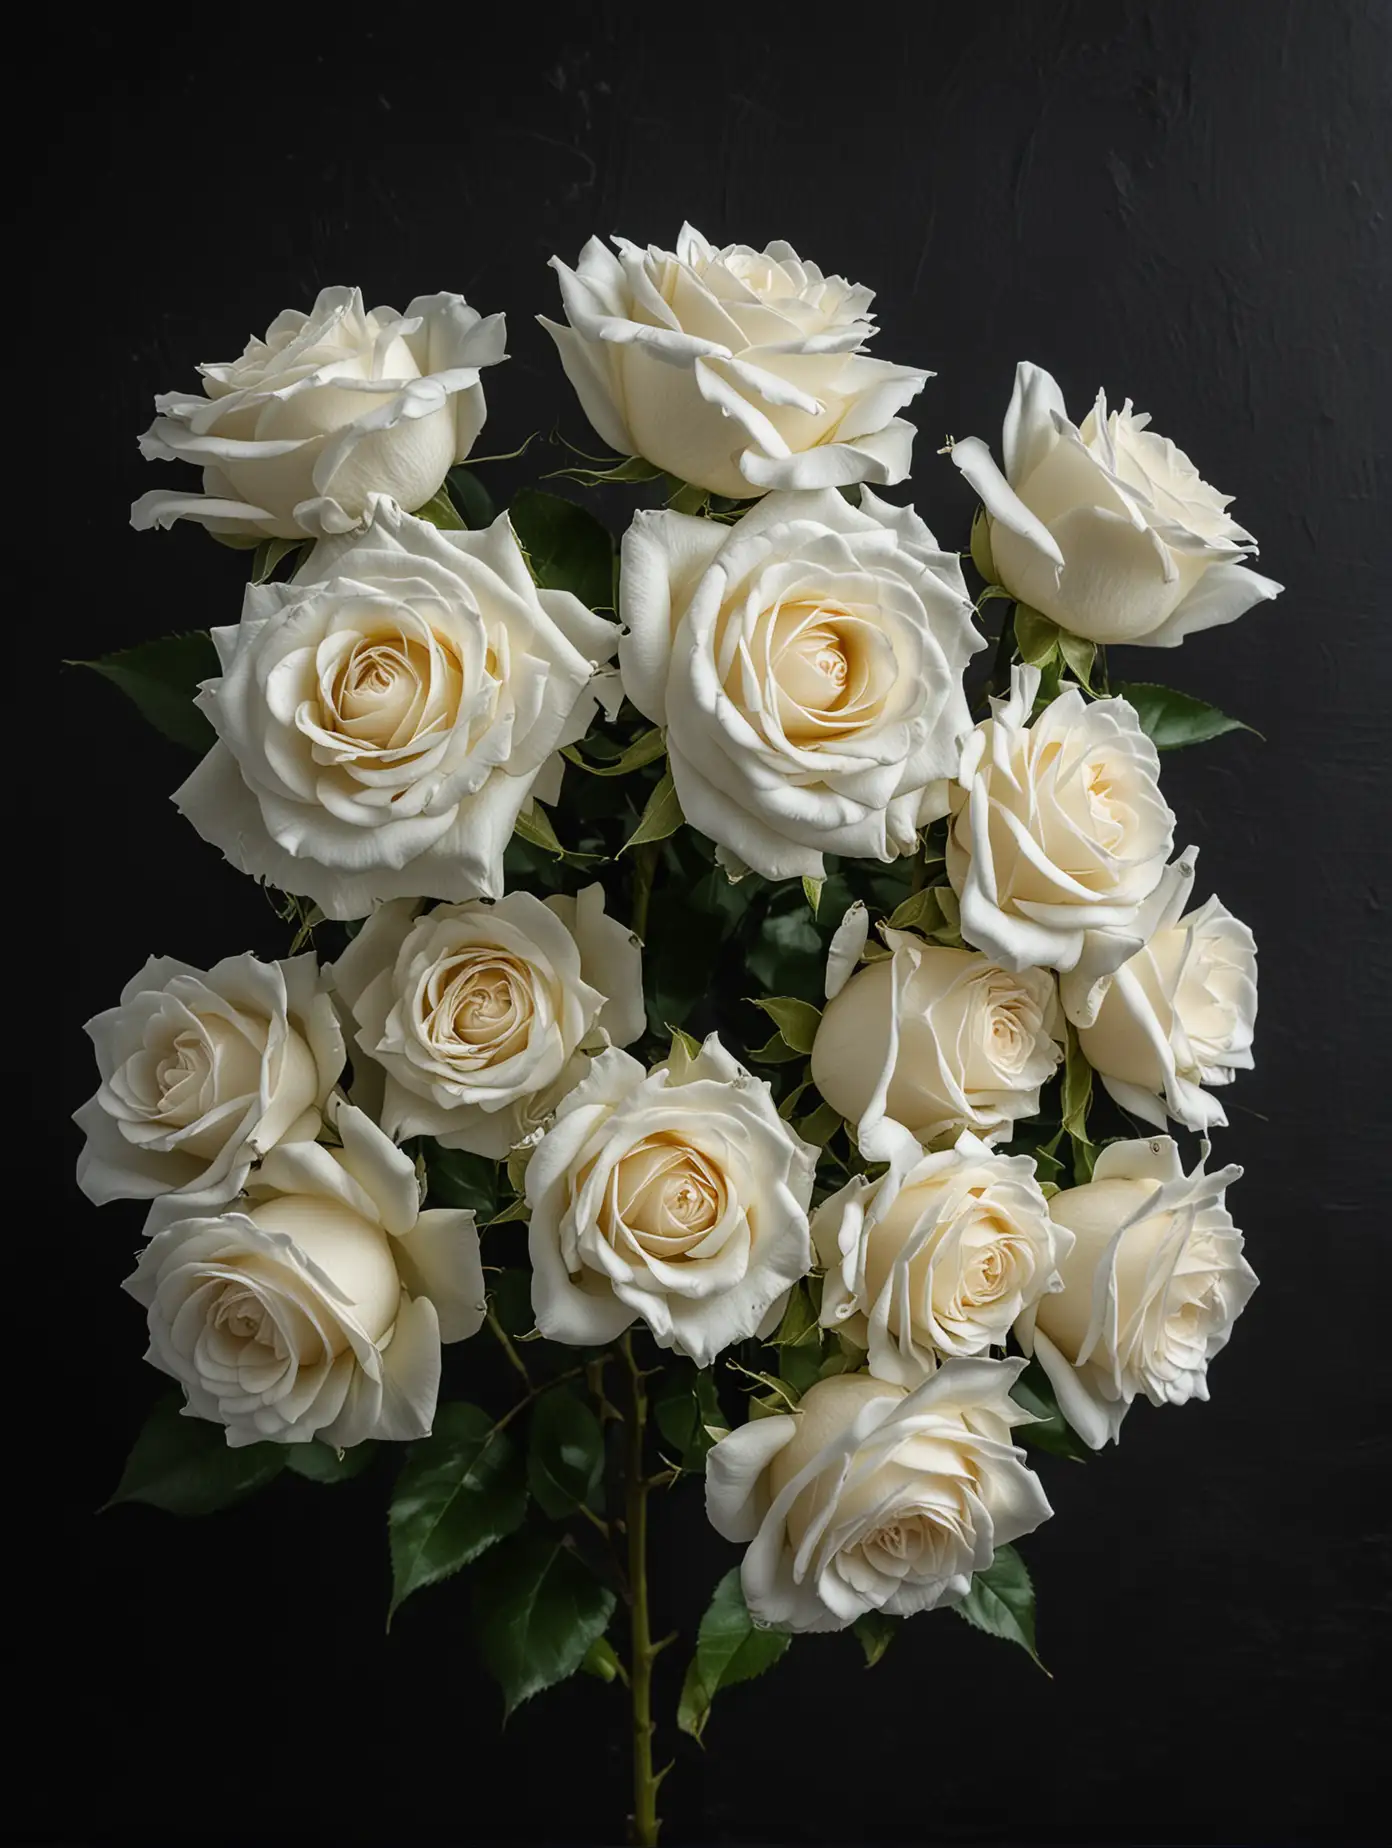 Elegant White Roses on Black Background